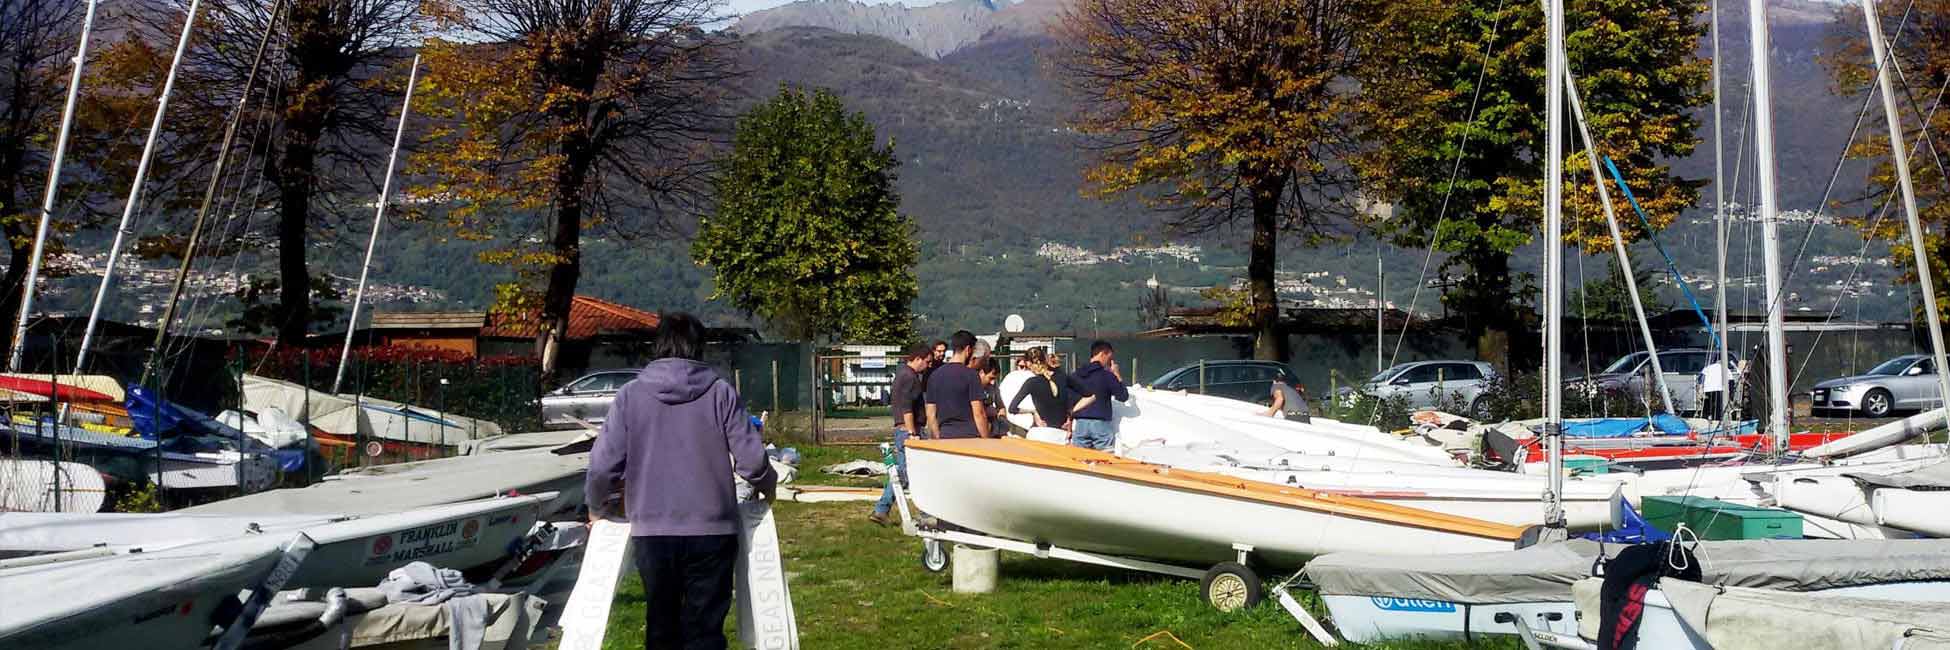 Rimessaggio barche imbarcazioni Colico lago di Como